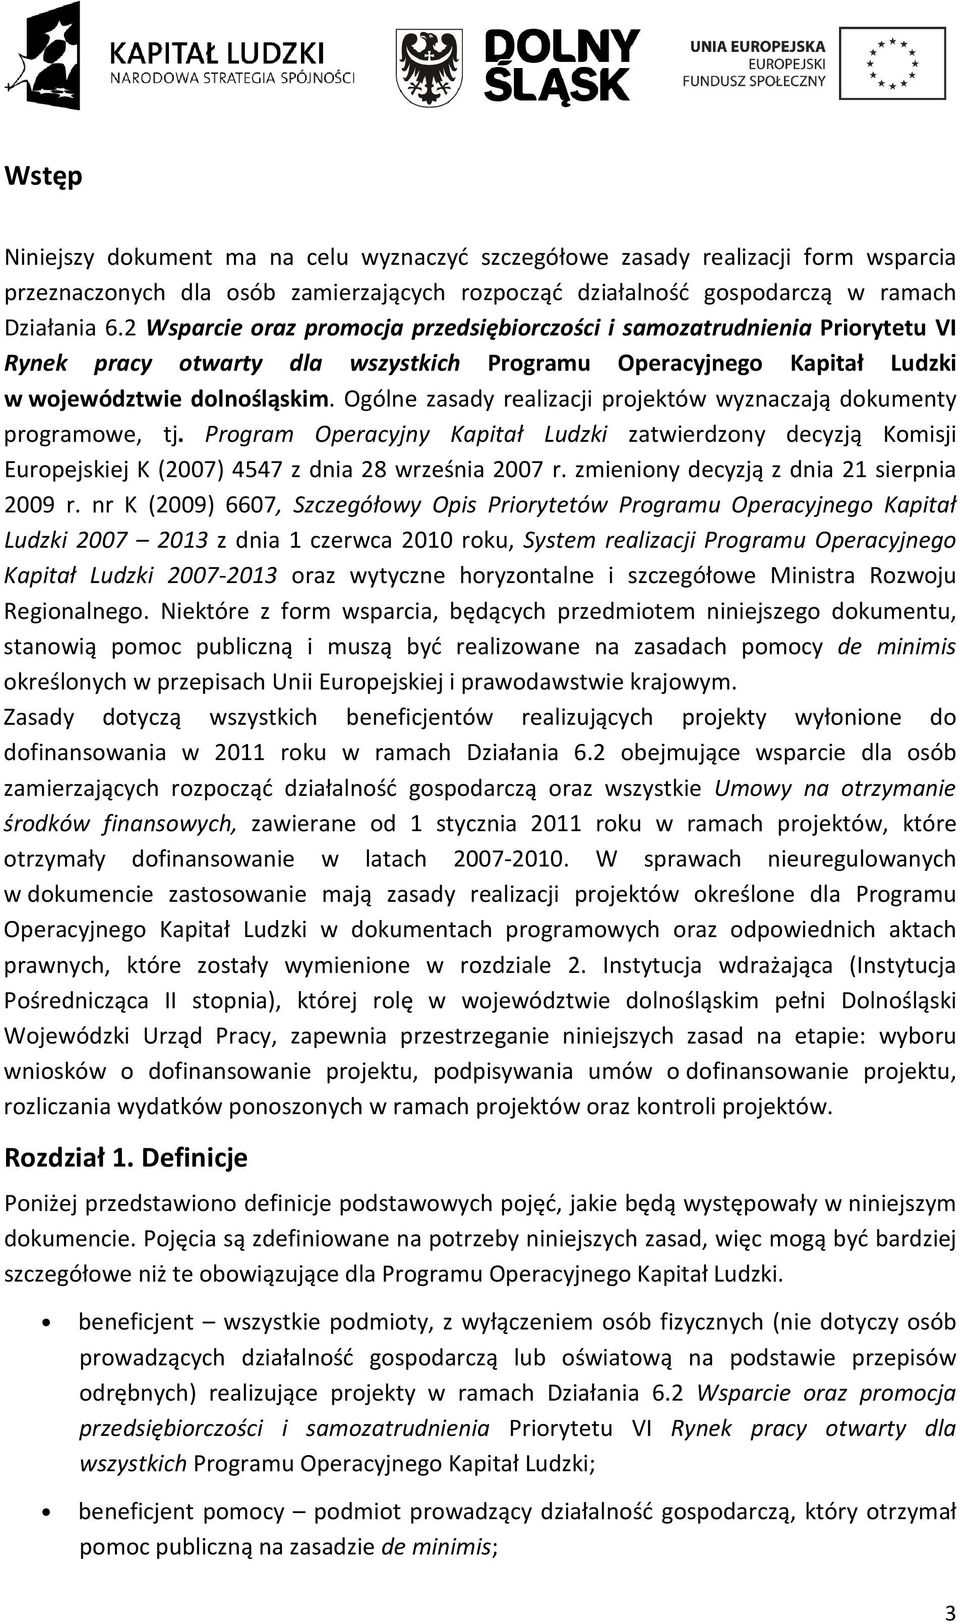 Ogólne zasady realizacji projektów wyznaczają dokumenty programowe, tj. Program Operacyjny Kapitał Ludzki zatwierdzony decyzją Komisji Europejskiej K (2007) 4547 z dnia 28 września 2007 r.